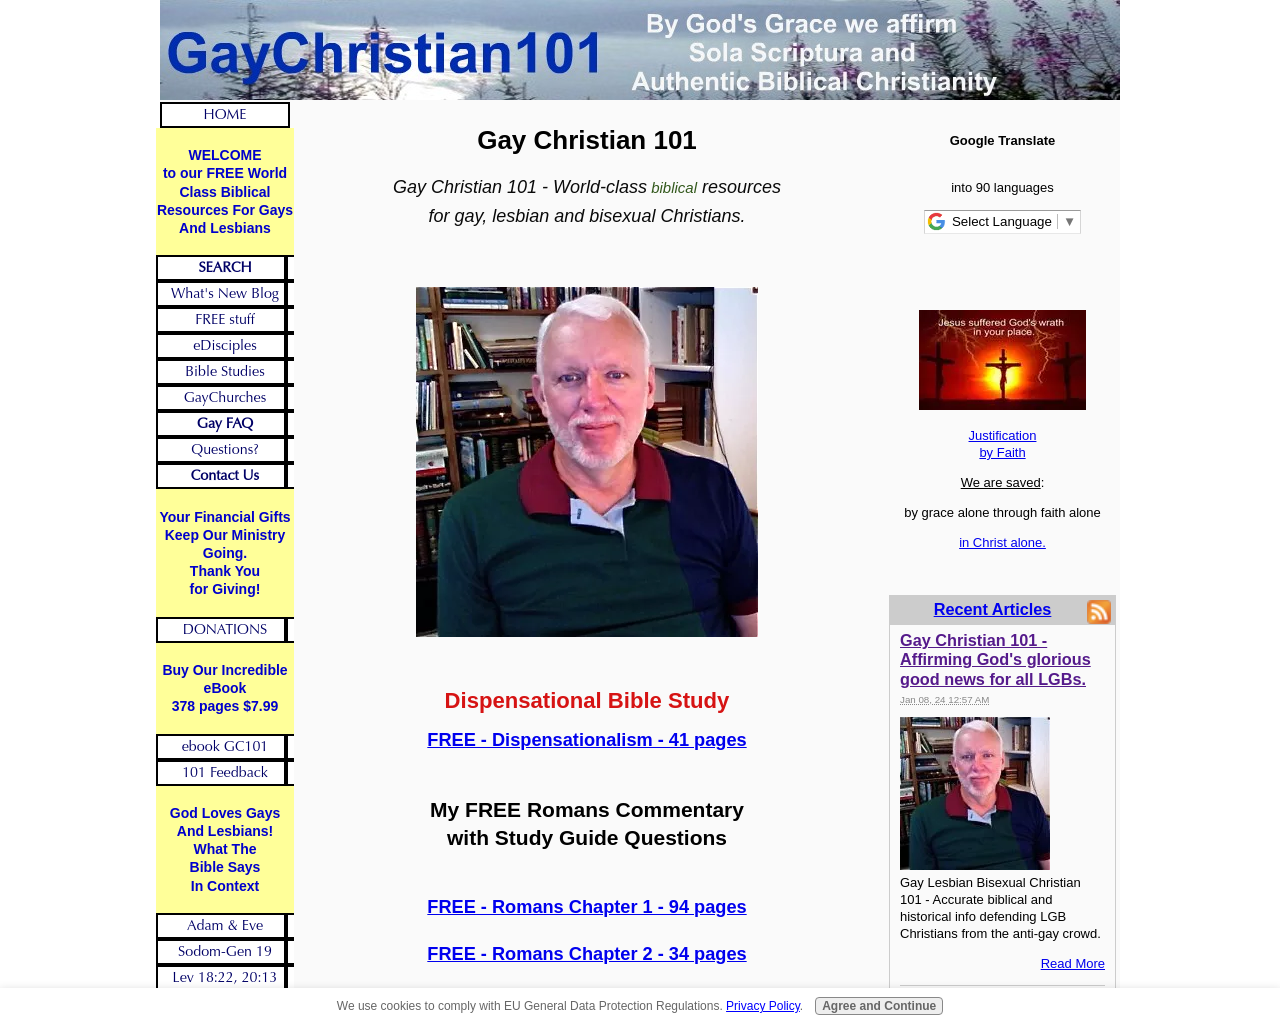 gaychristian101.com